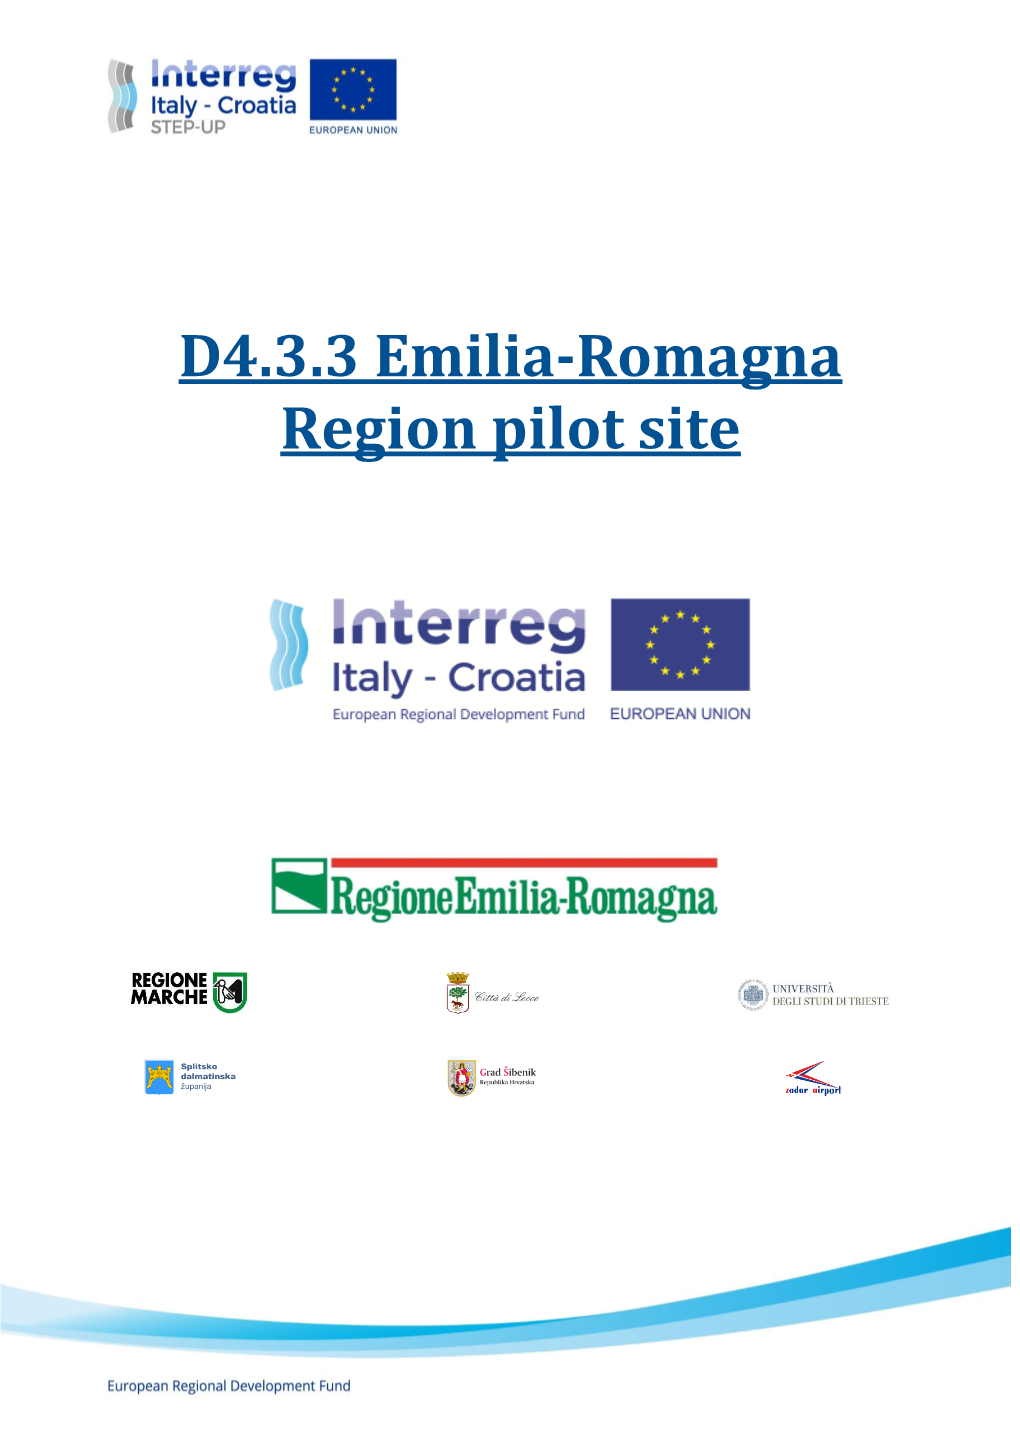 D4.3.3 Emilia-Romagna Region Pilot Site